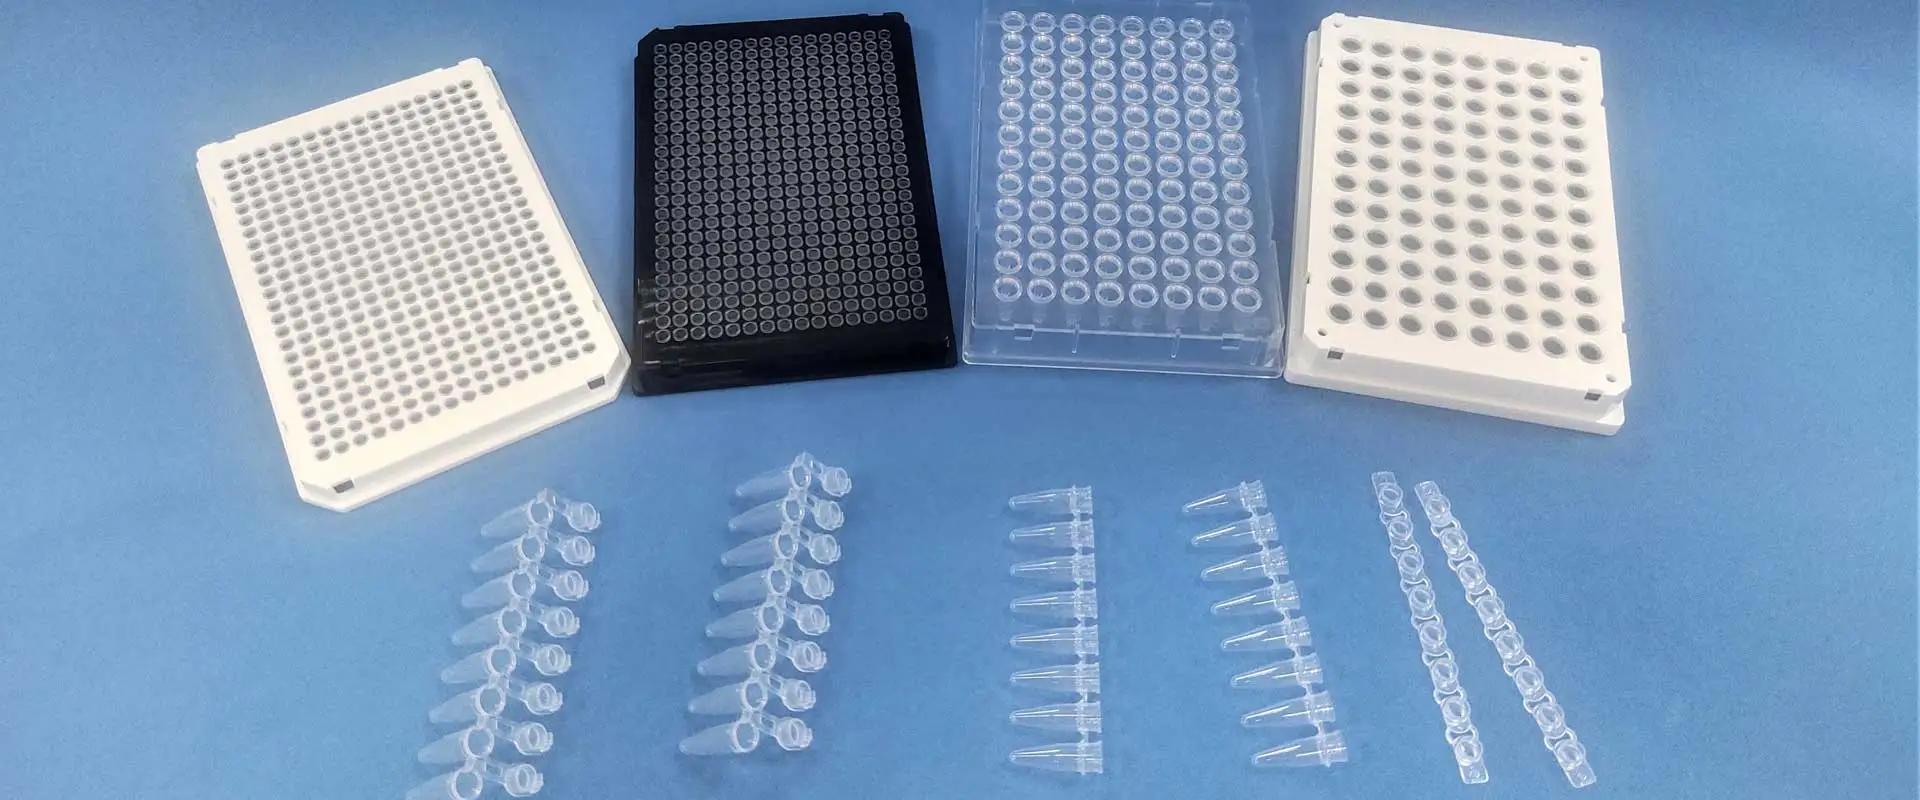 PCRプレート & チューブ